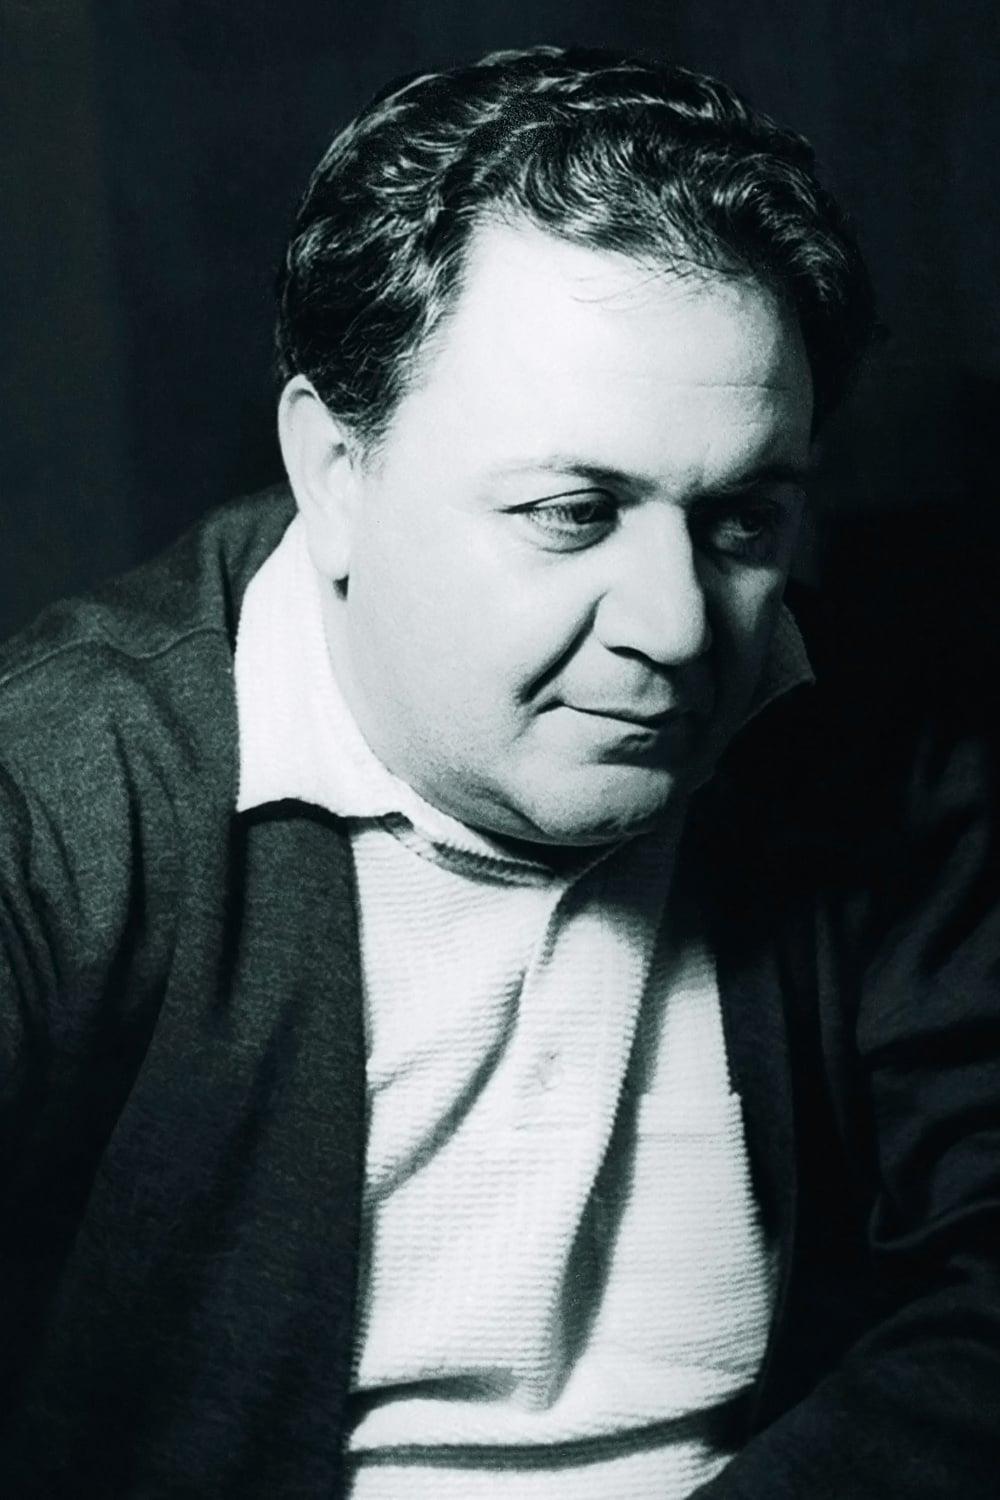 Manos Hatzidakis | Original Music Composer